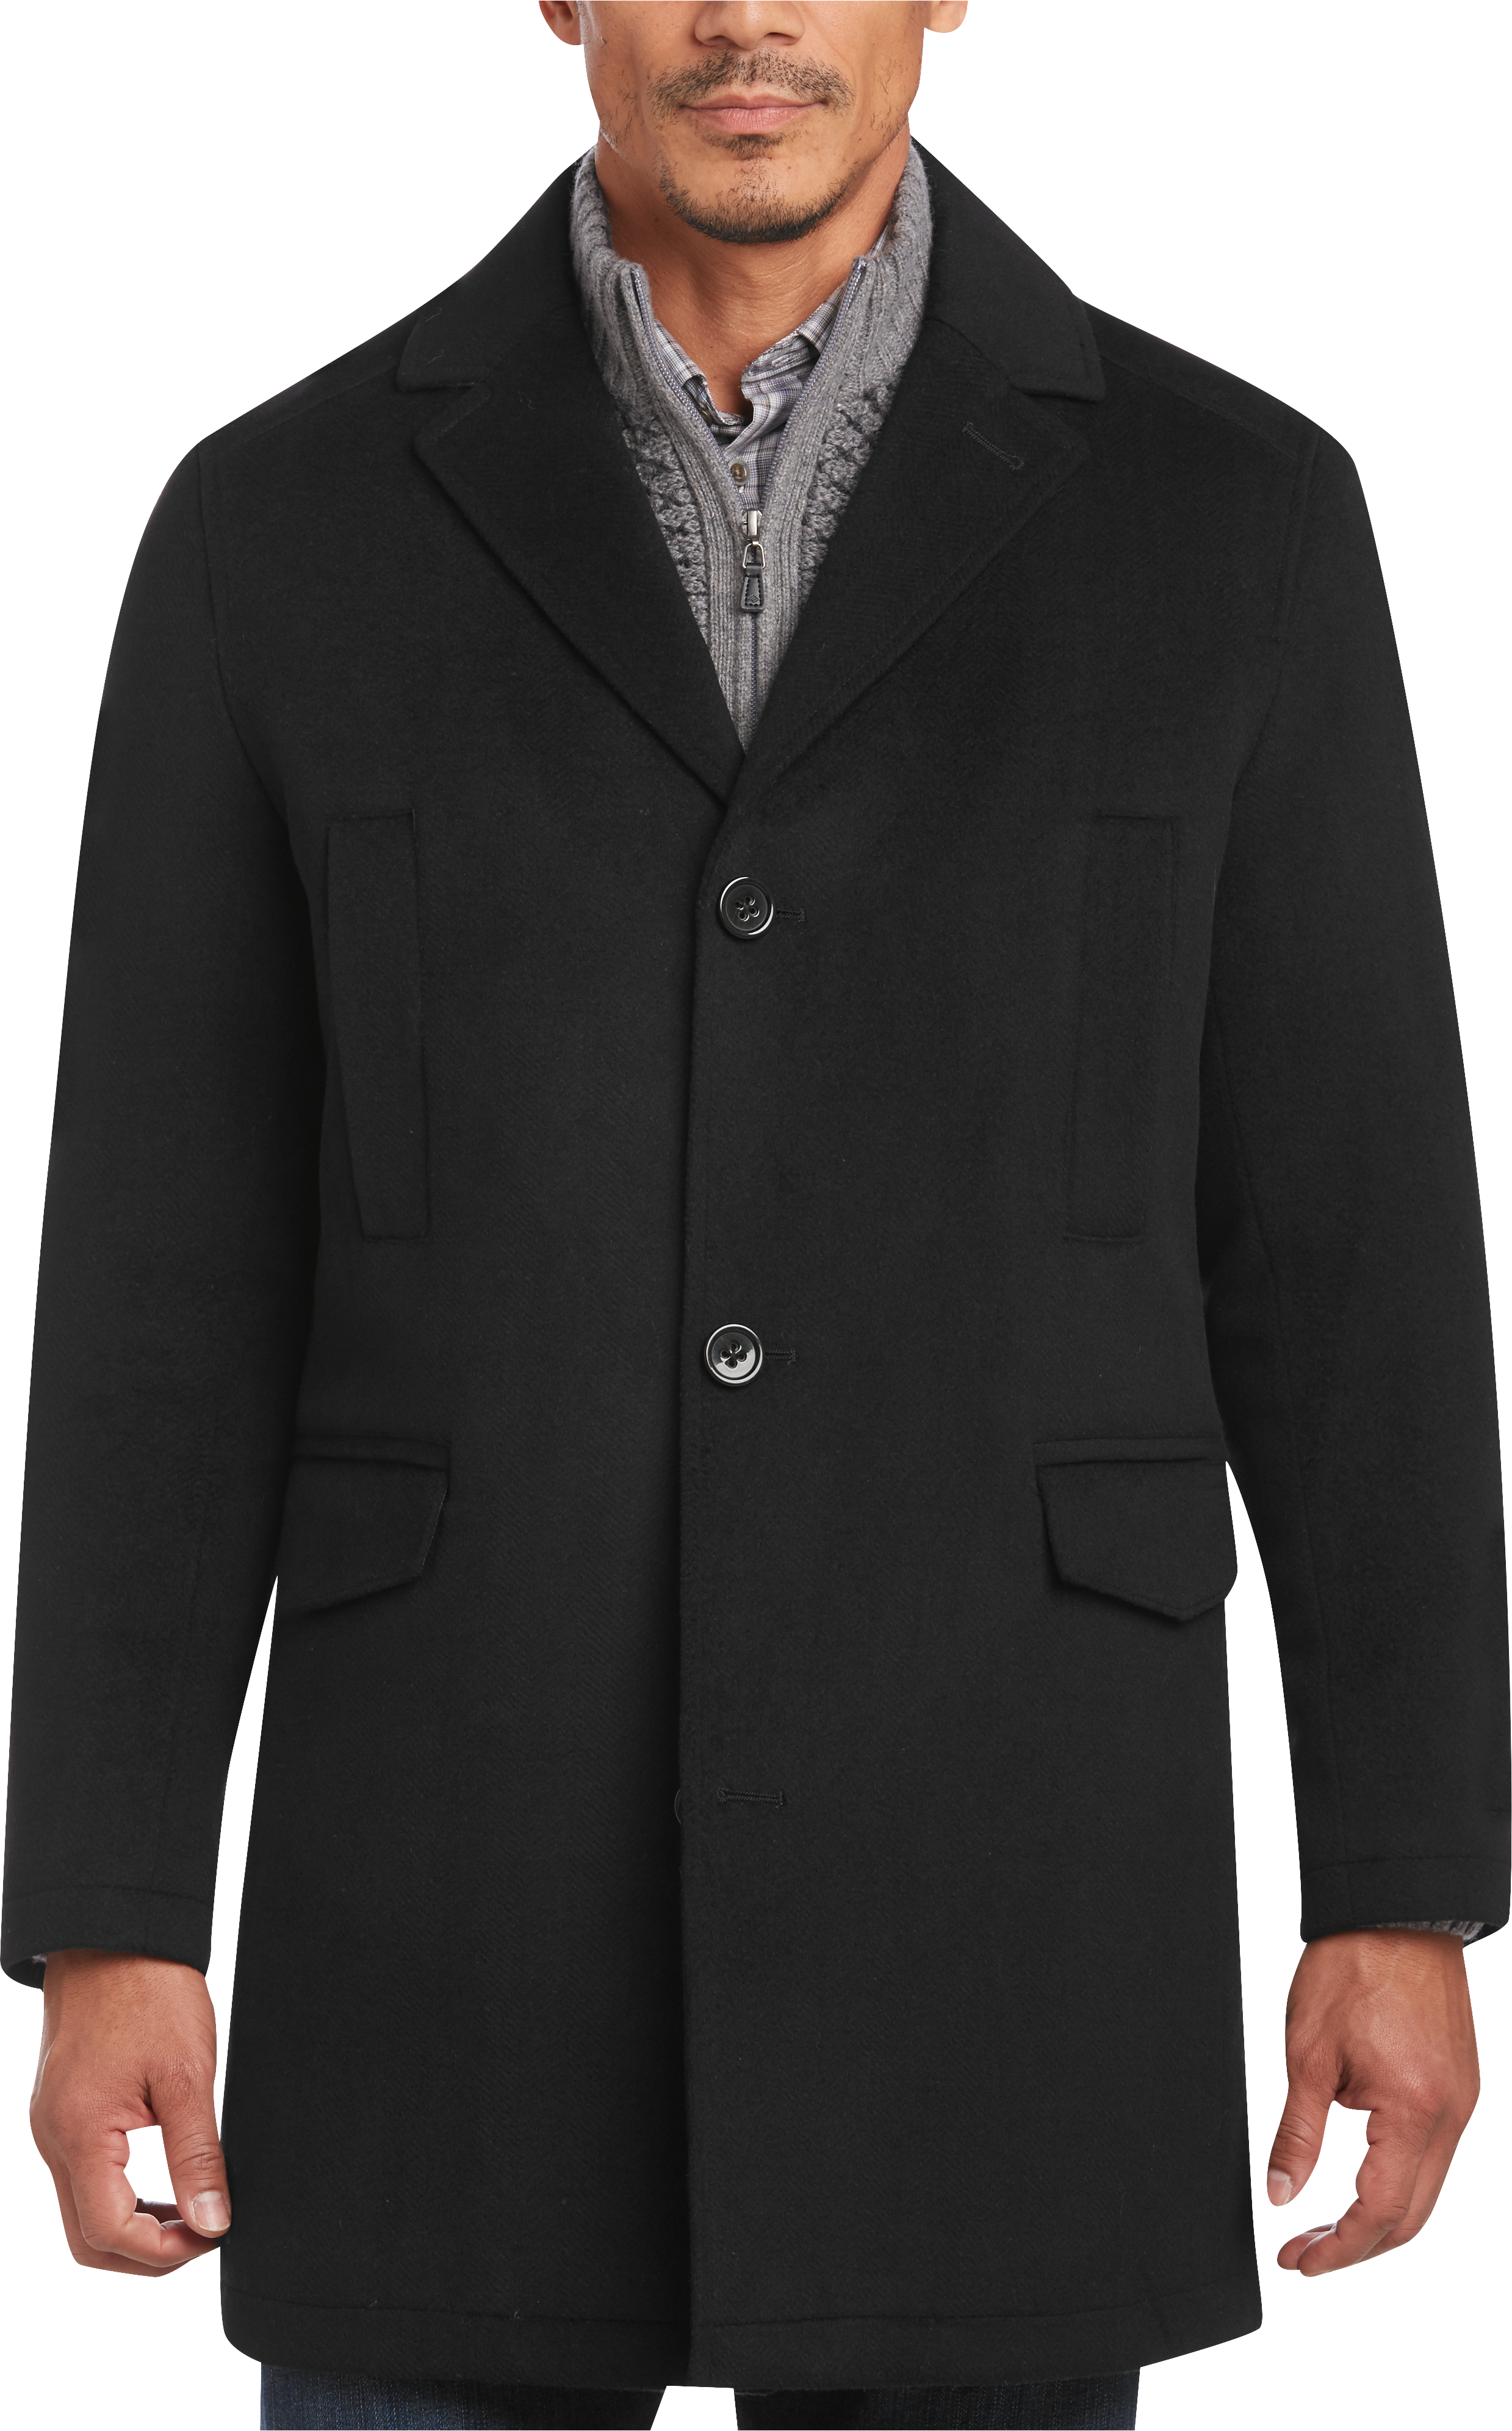 Jackets, Outerwear & Coats for Men | Men's Wearhouse